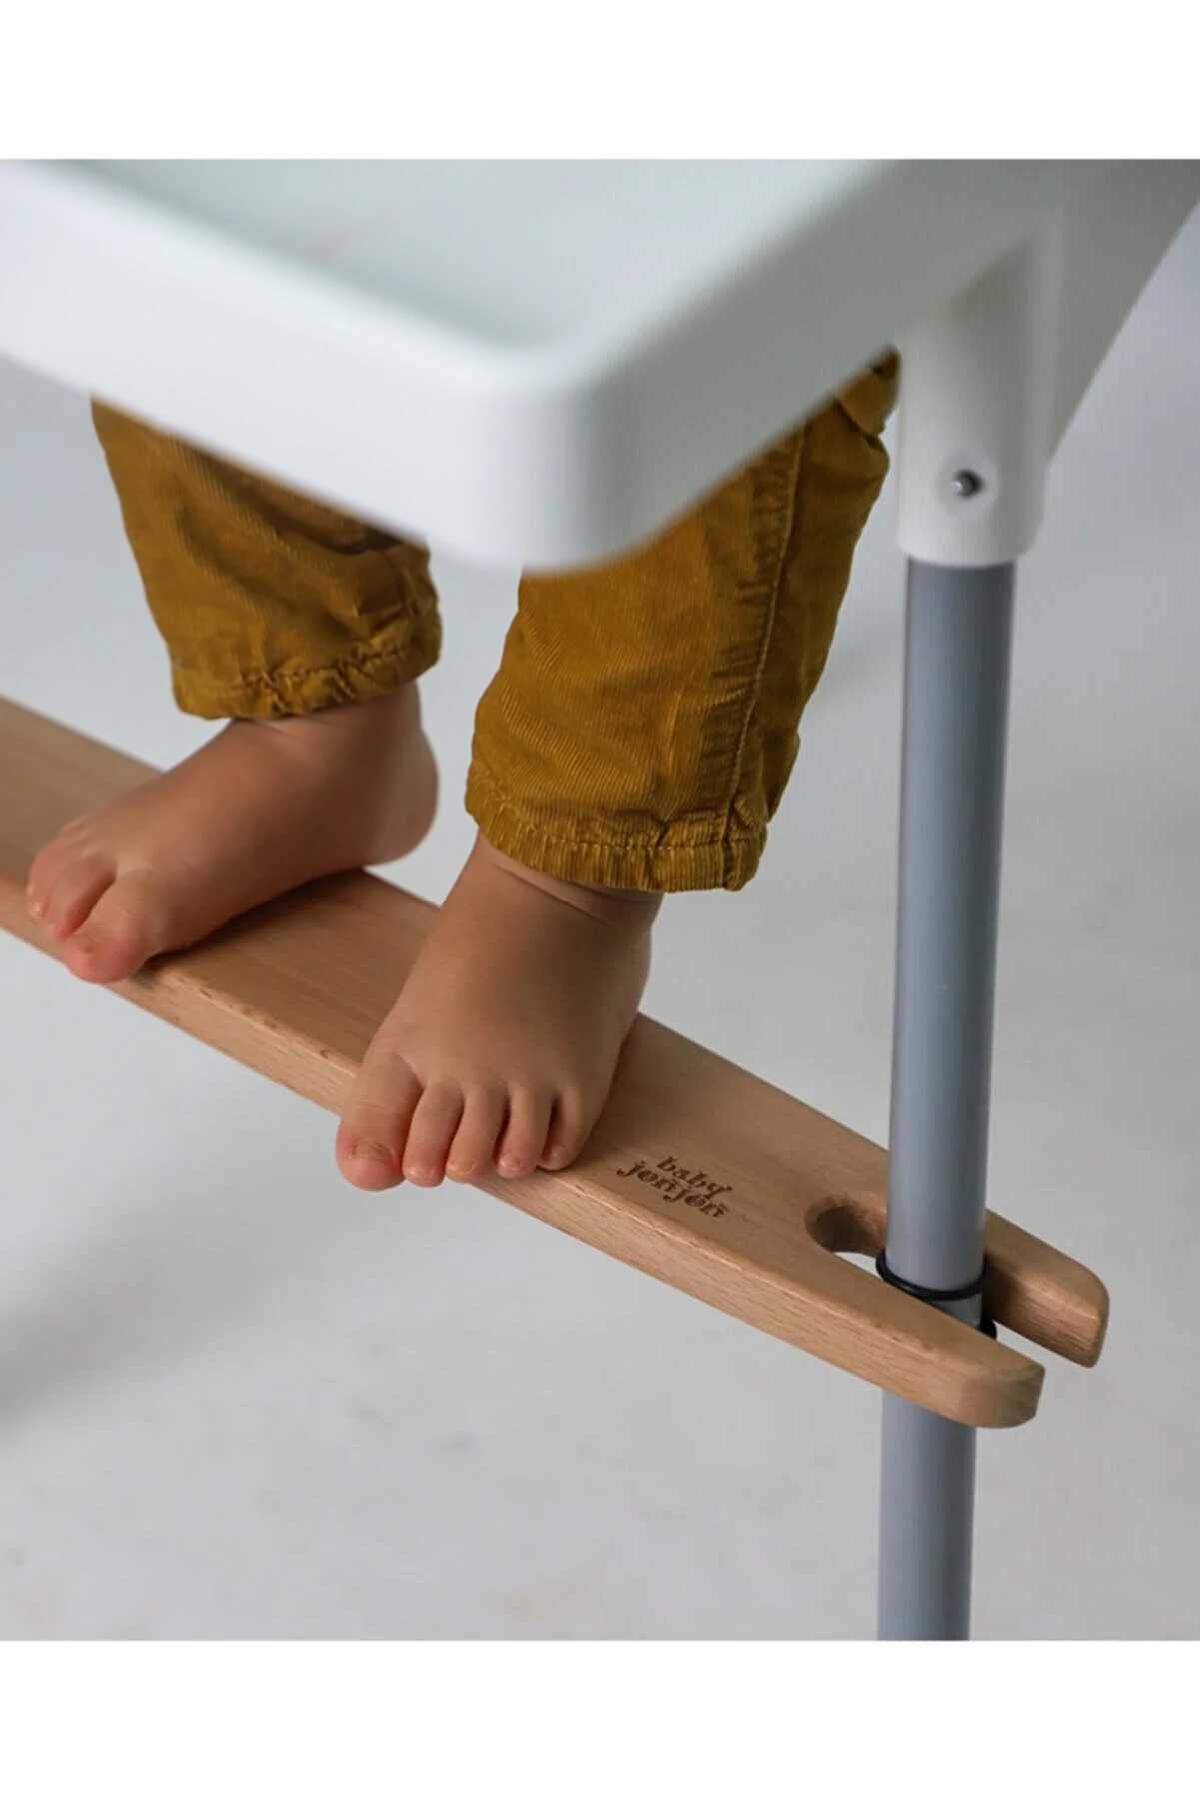 زیرپایی کودک سازگار با صندلی غذا کد.1001